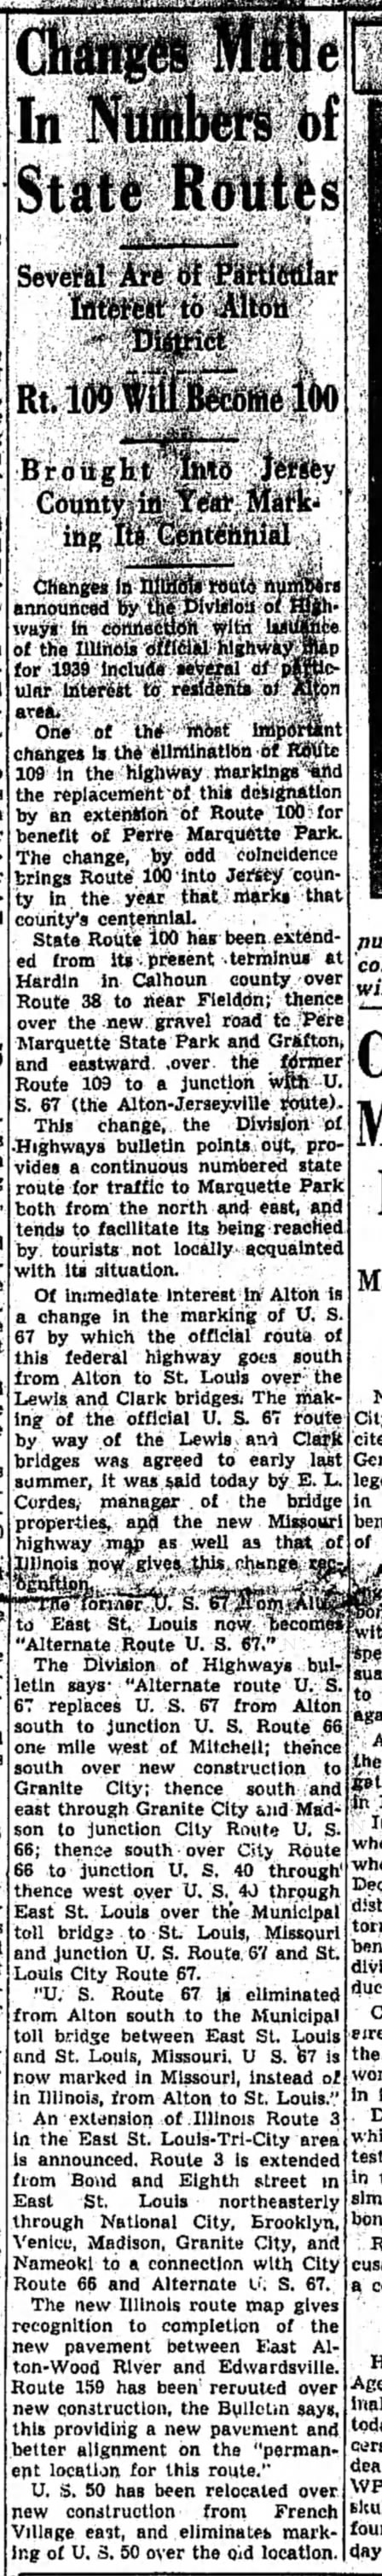 IL route changes, March 25, 1939